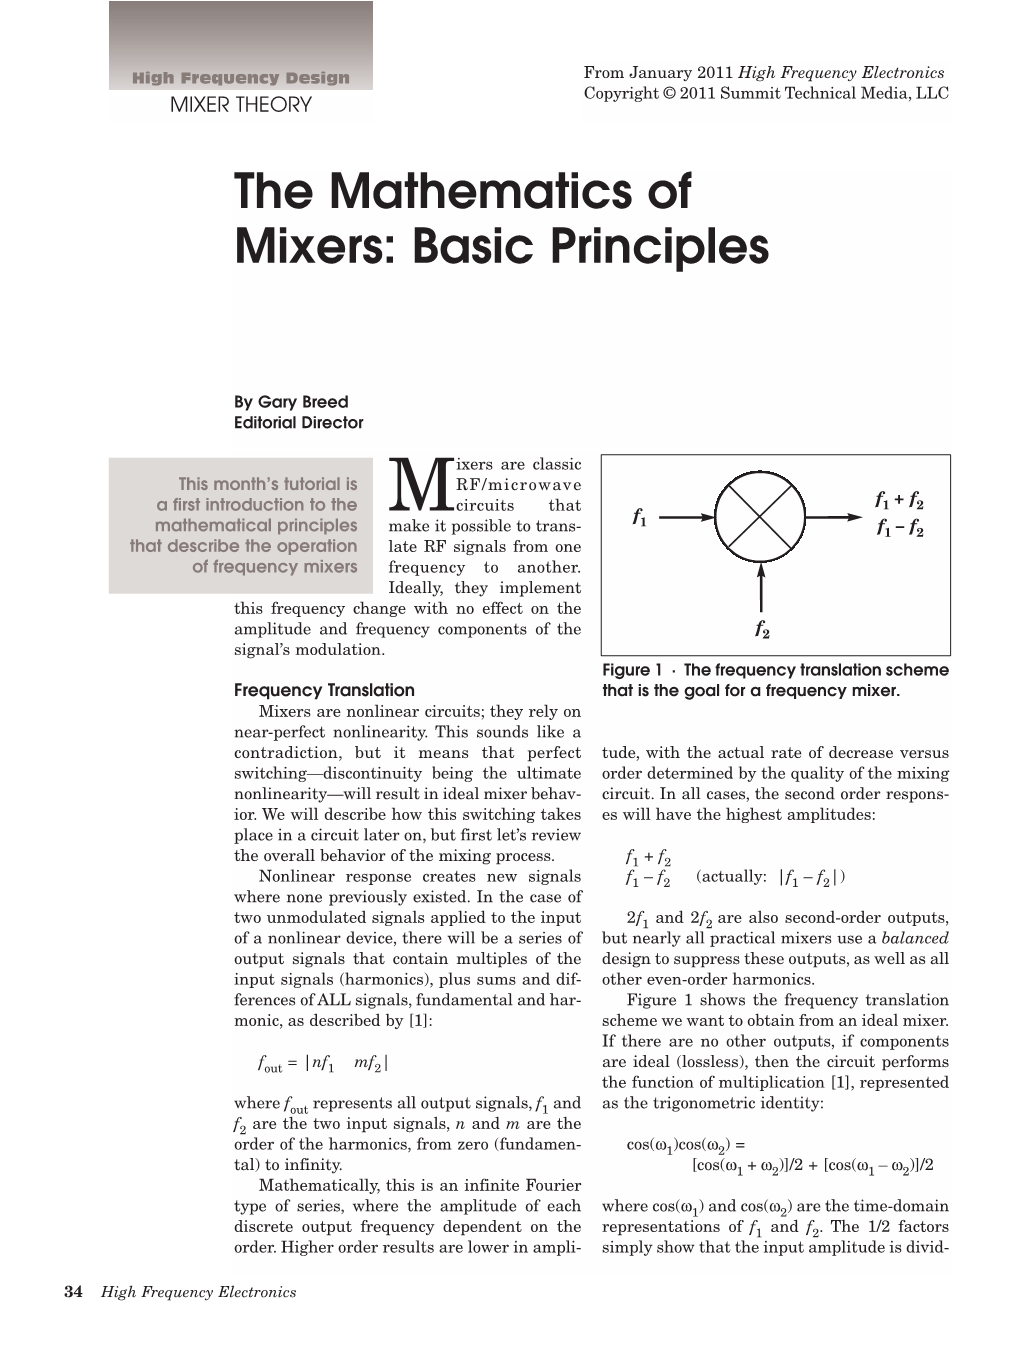 The Mathematics of Mixers: Basic Principles